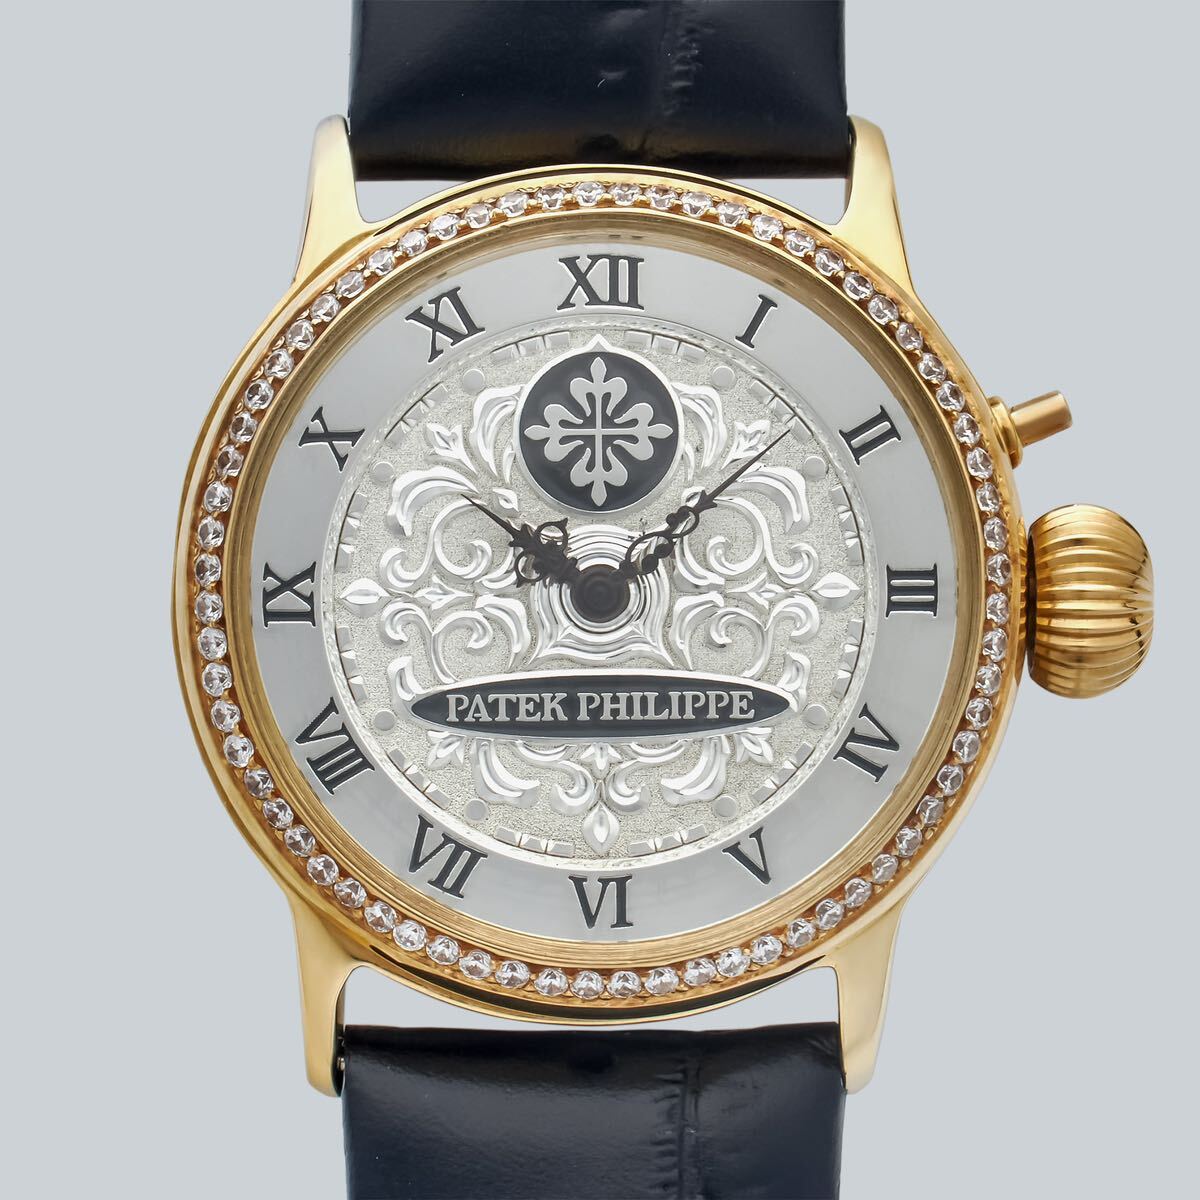 アンティーク Marriage watch Patek Philippe 懐中時計をアレンジした40mmのメンズ腕時計 半年保証 手巻き スケルトンの画像1